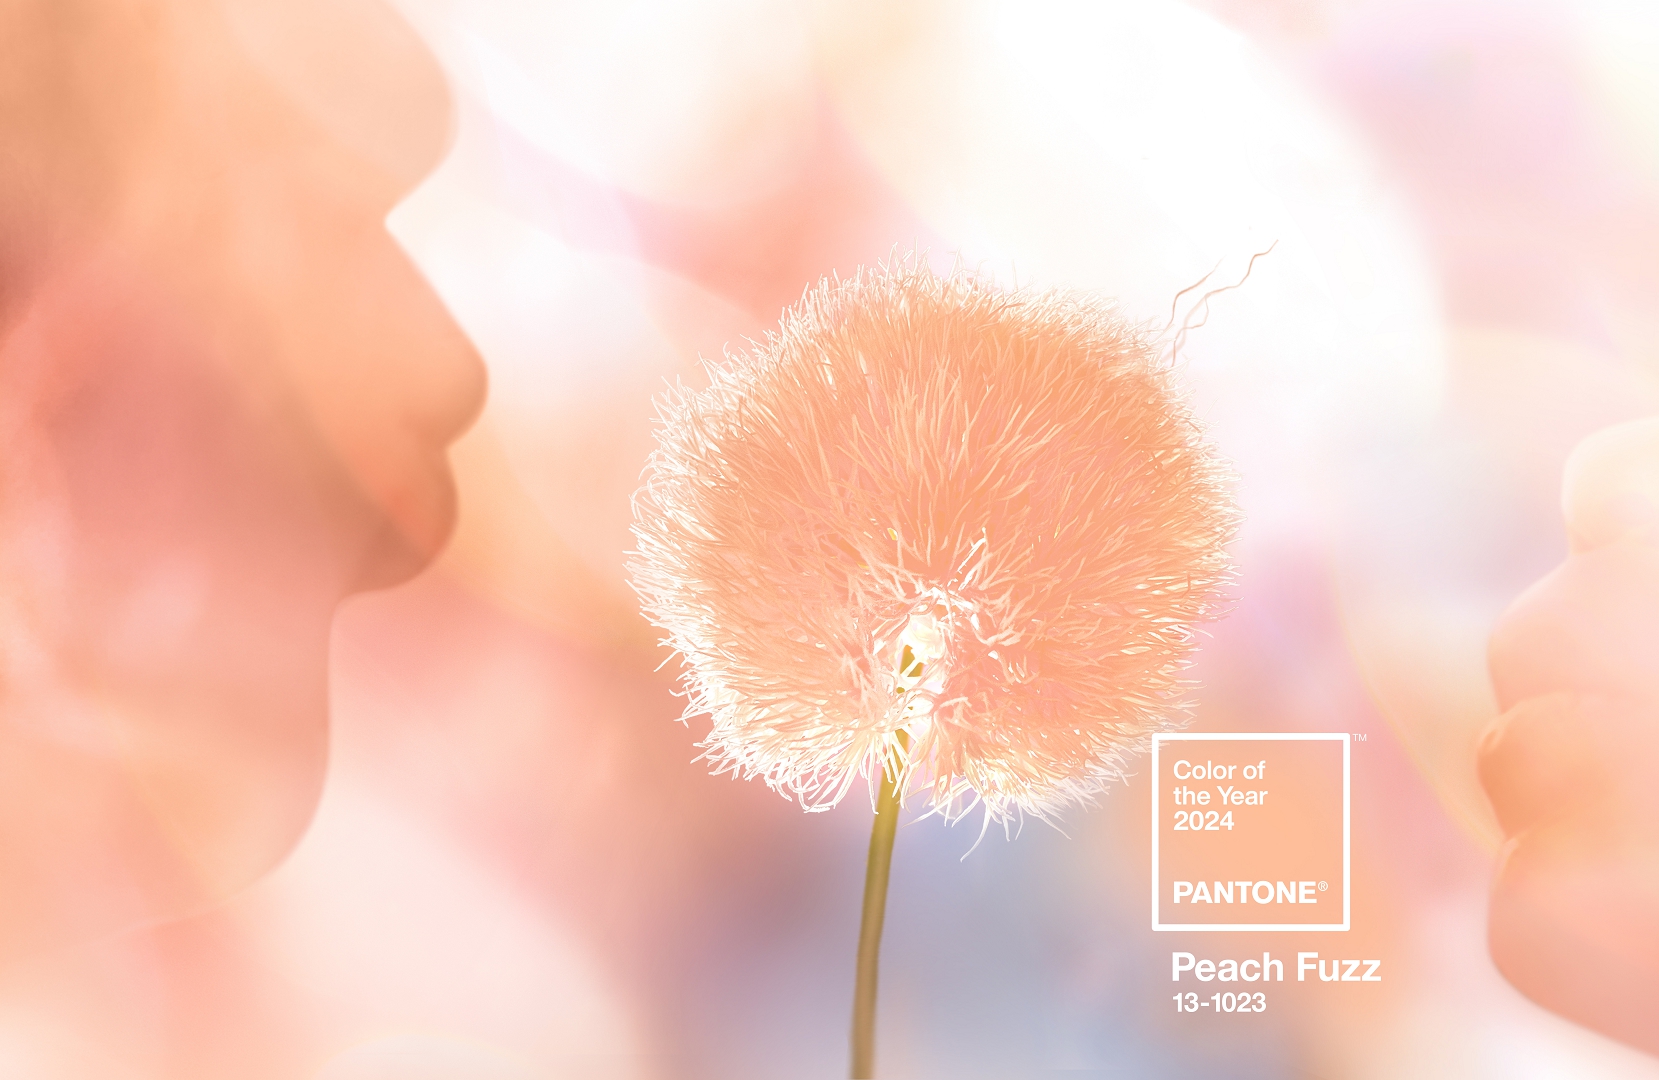 Pútko na kľúče S PANTONE Peach Fuzz 13-1023 (farba roku 2024)